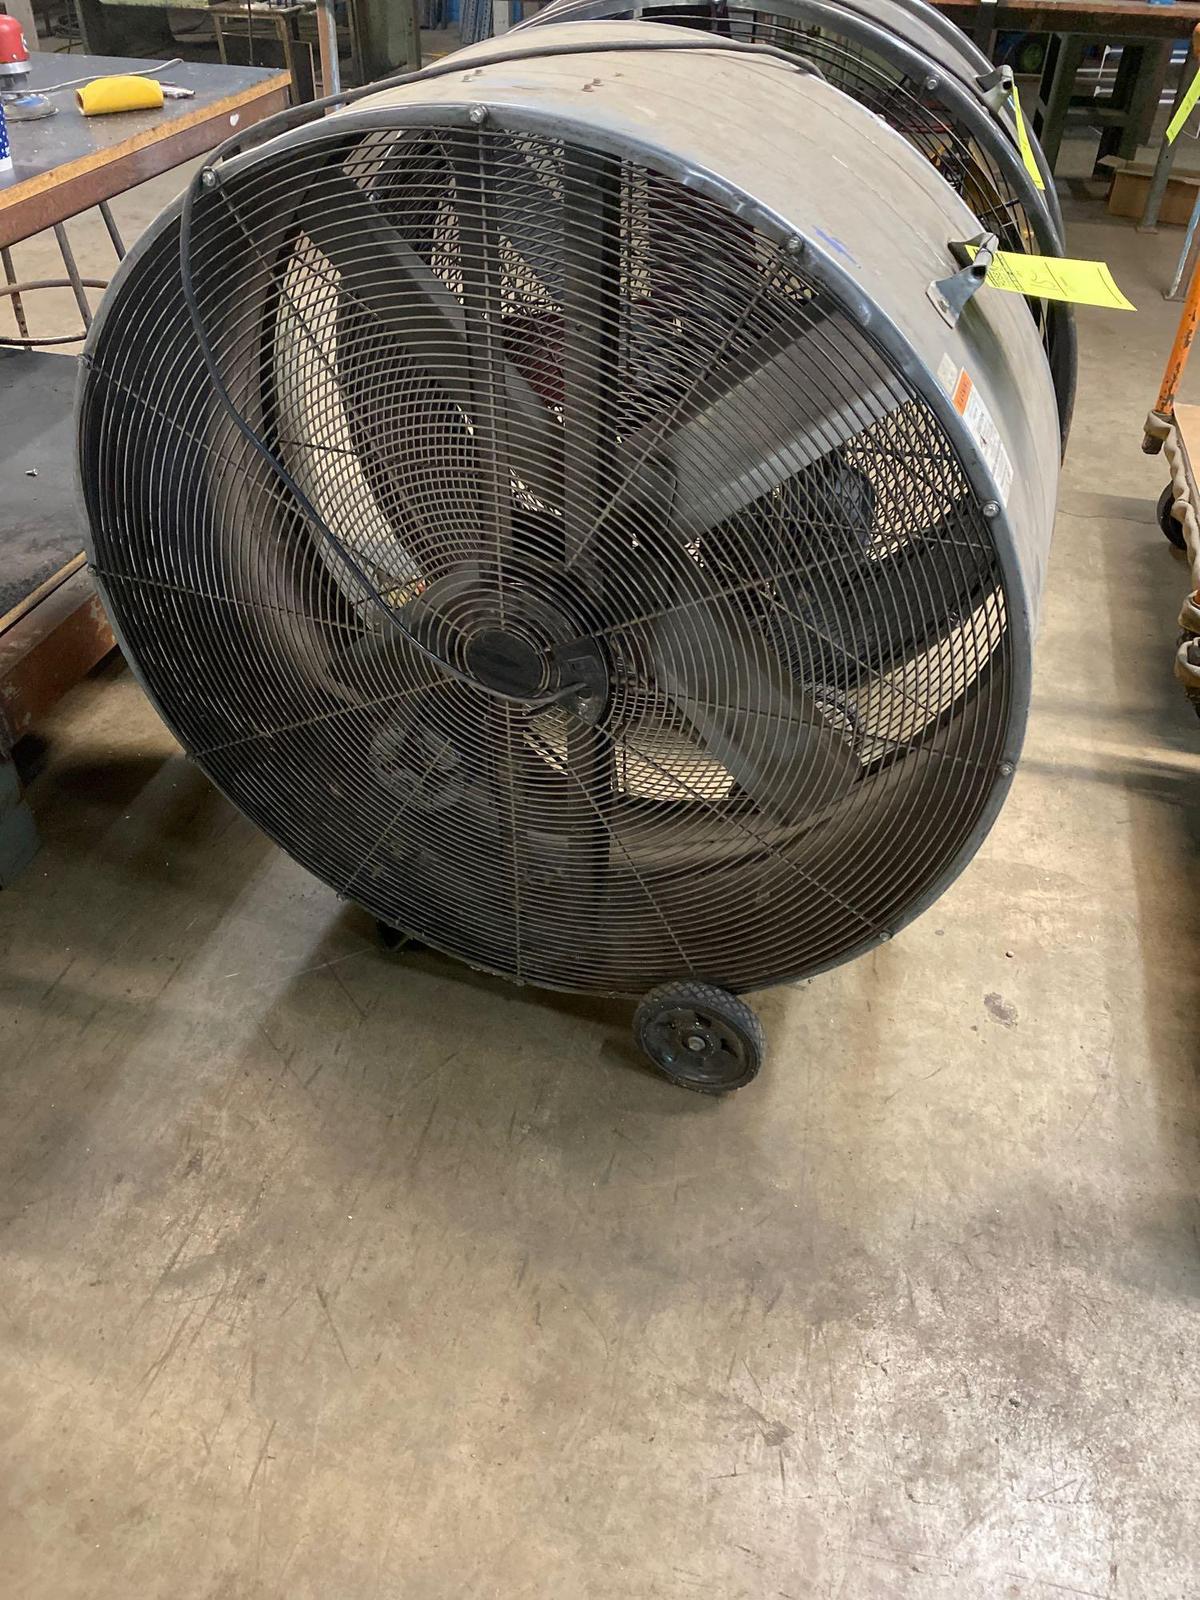 42 inch barn fan, works